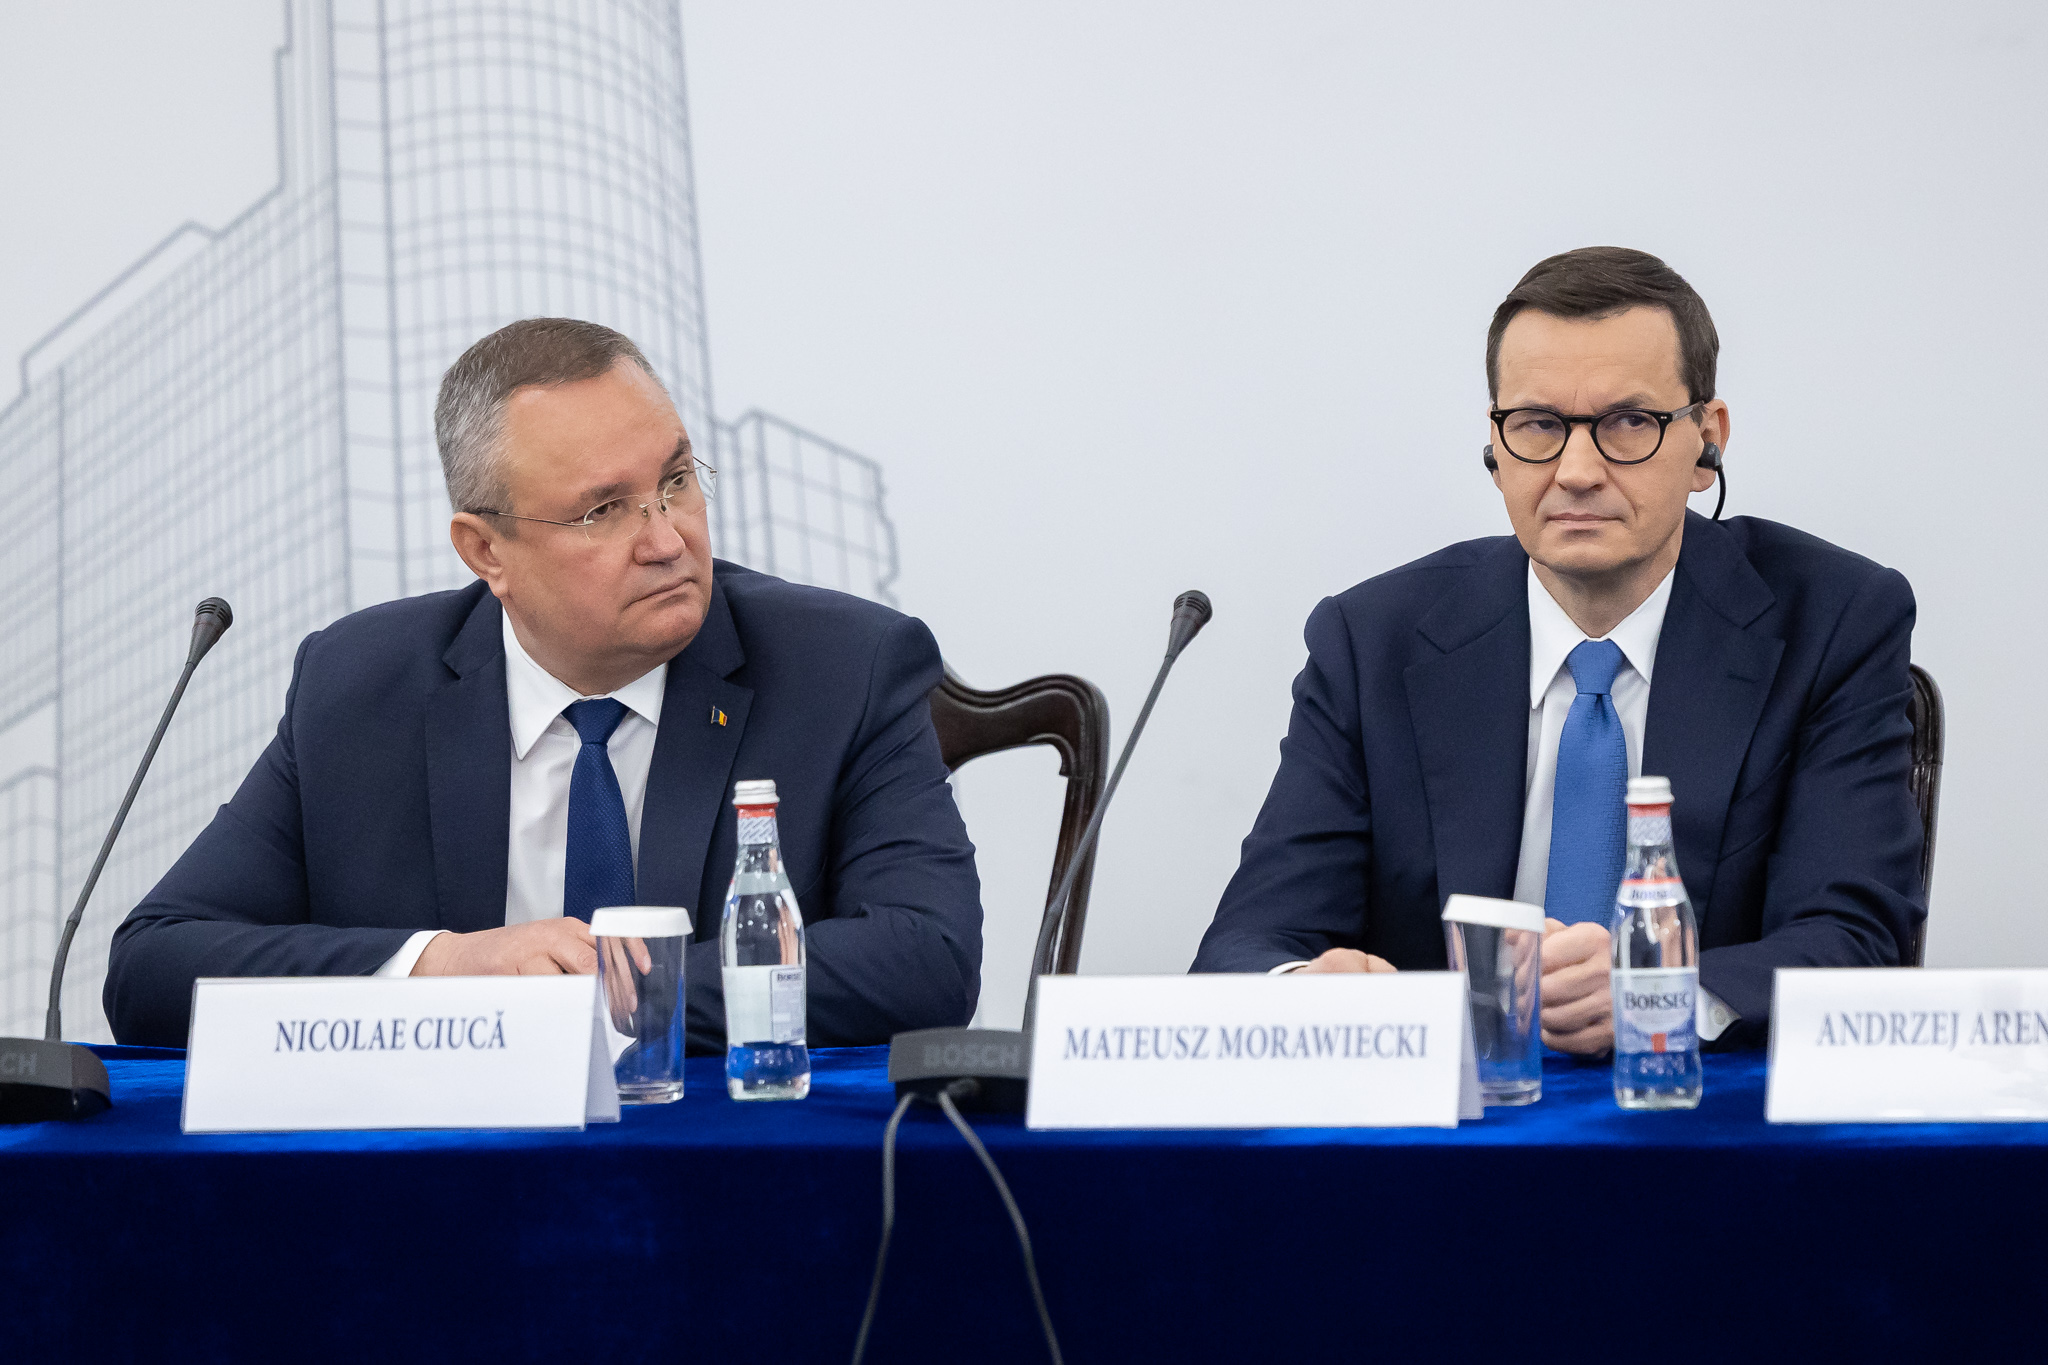 Morawiecki: megnőtt Közép- és Kelet-Európa szerepének jelentősége